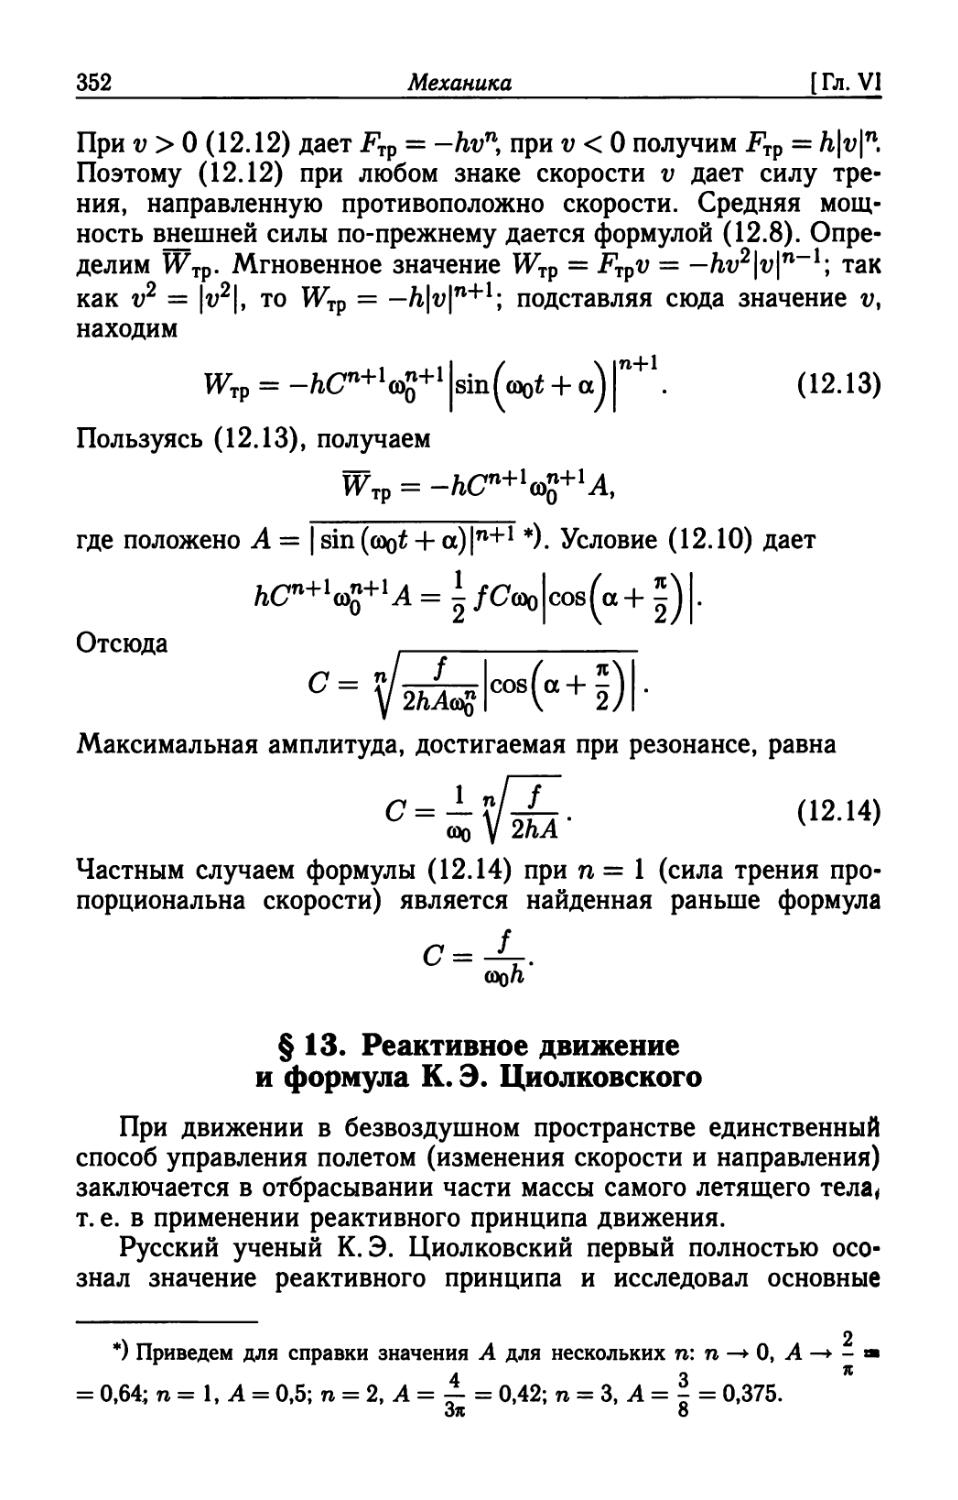 § 13. Реактивное движение и формула К. Э. Циолковского